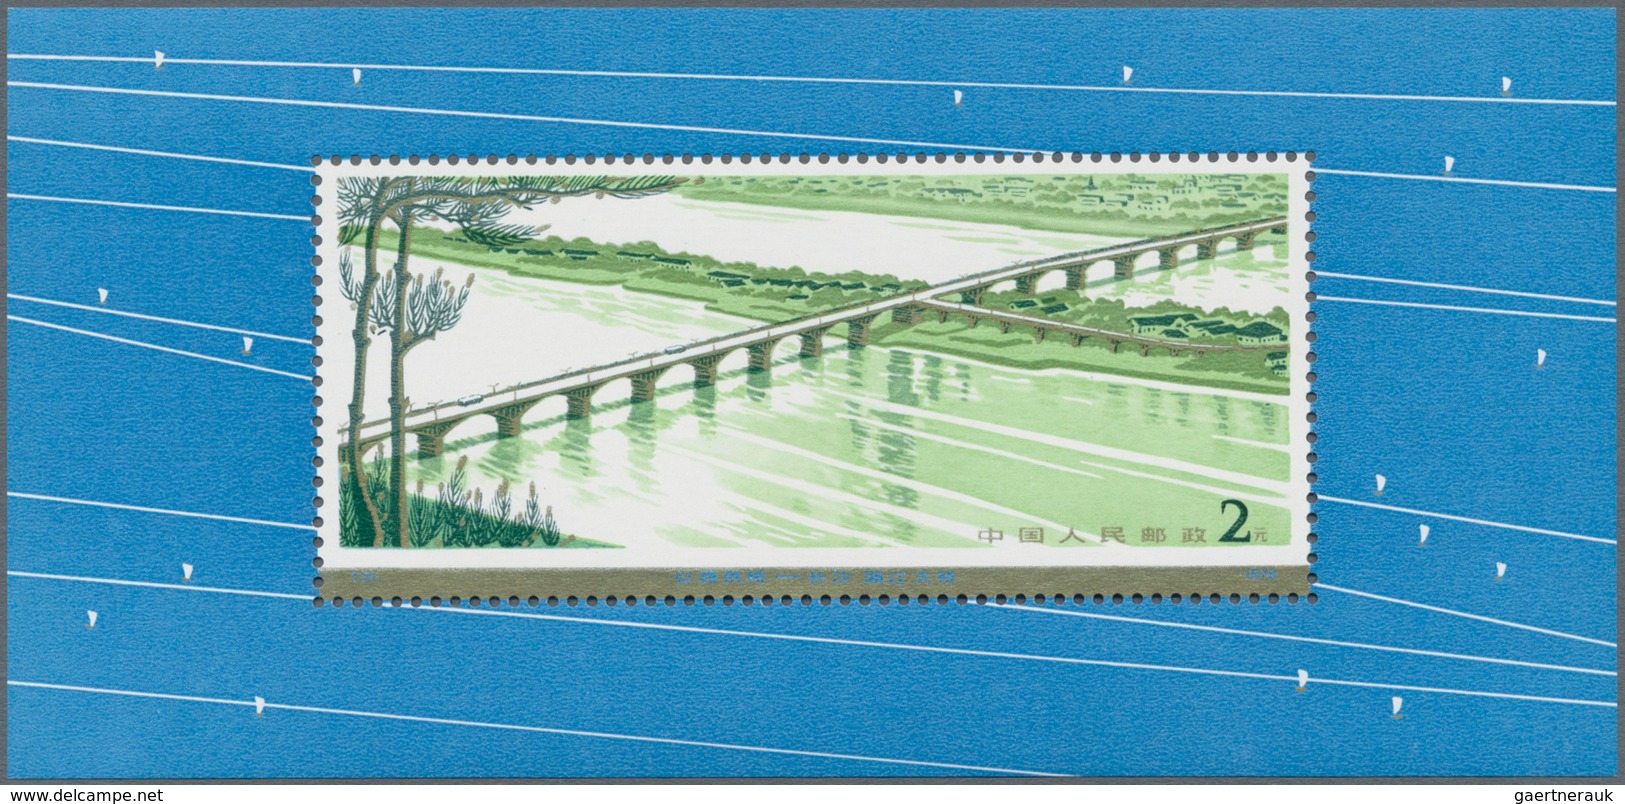 China - Volksrepublik: 1978, Highway Bridges S/s (T31M), MNH (Michel €450). - Lettres & Documents